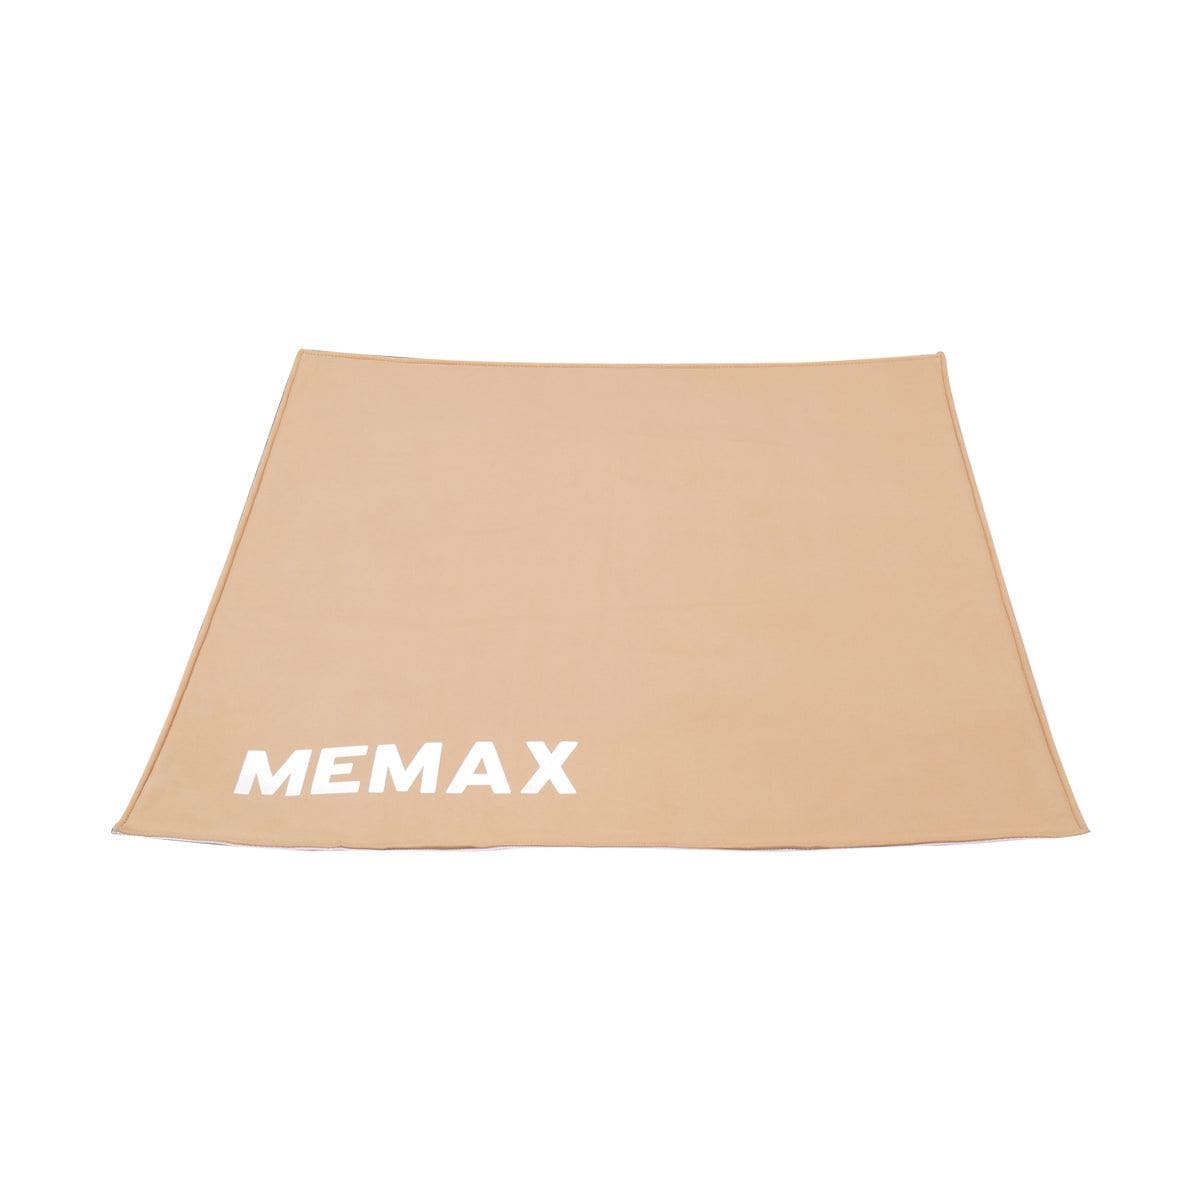 MEMAX Multi Functional Mat